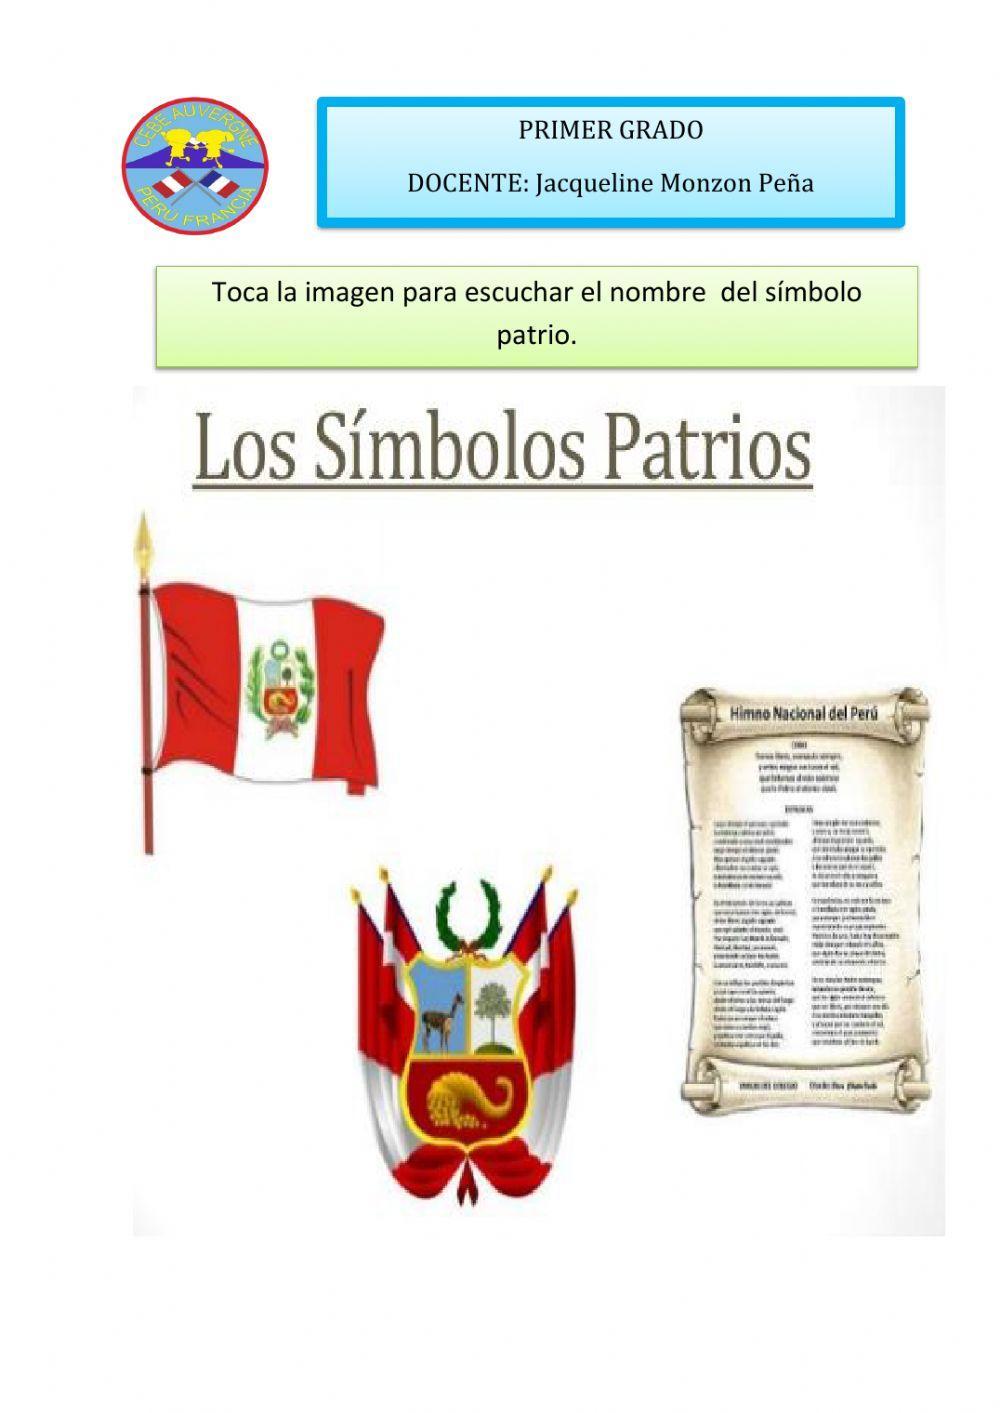 Símbolos patrios de Perù